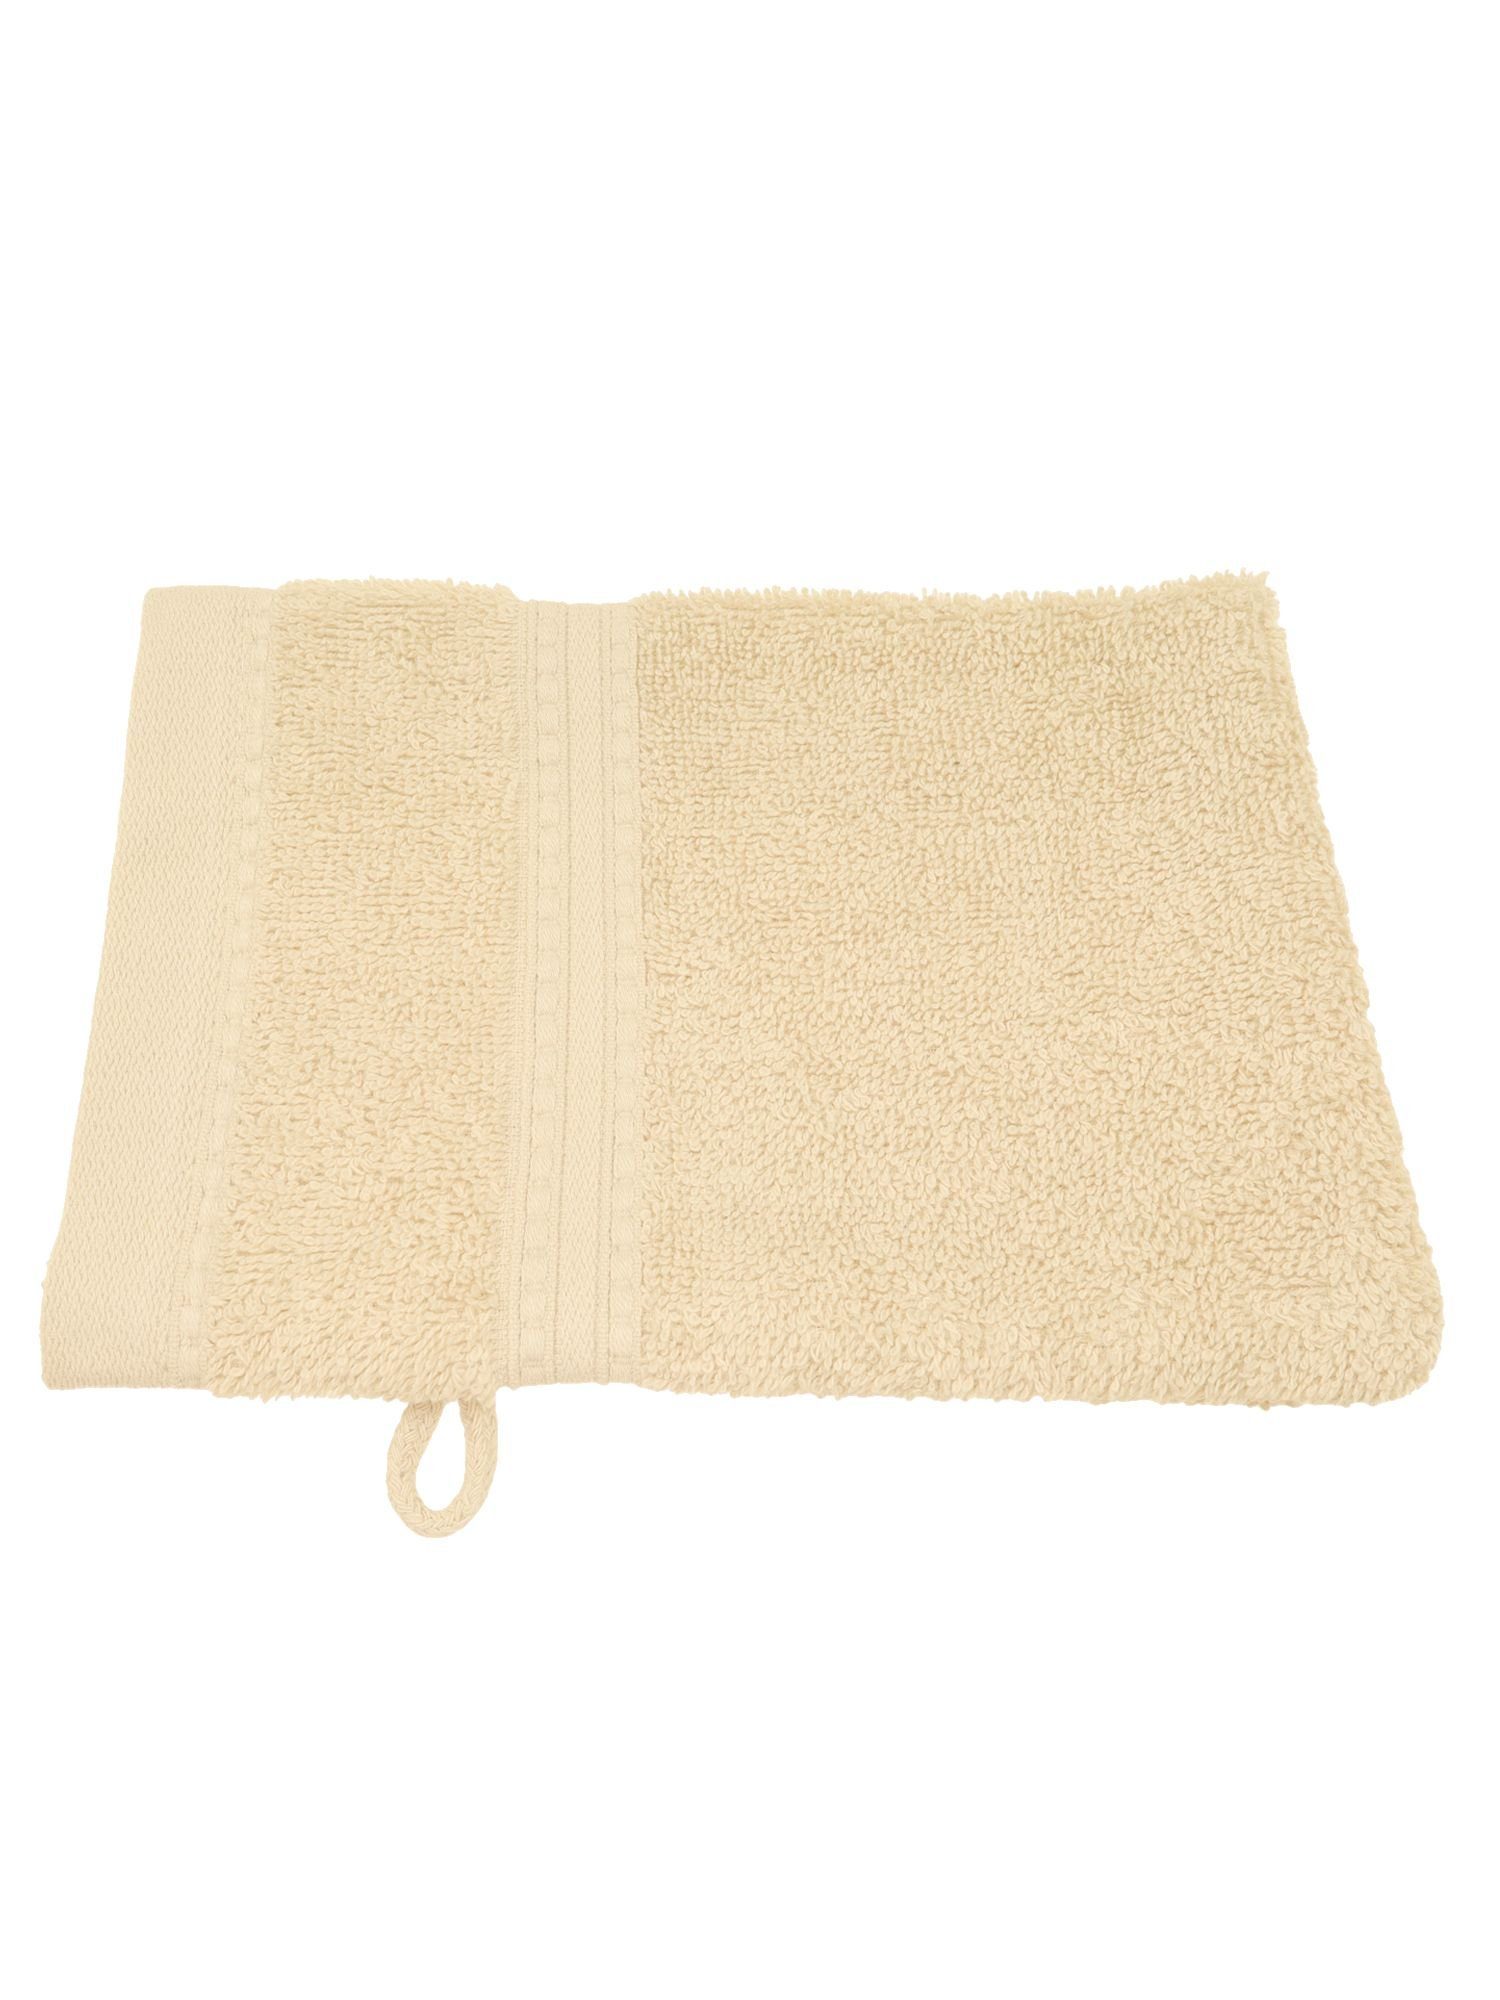 Julie Julsen Handtuch 1-Handtuch-Pastell Beige-Waschhandschuh 15 x 21 cm, Bio-Baumwolle (1-St)